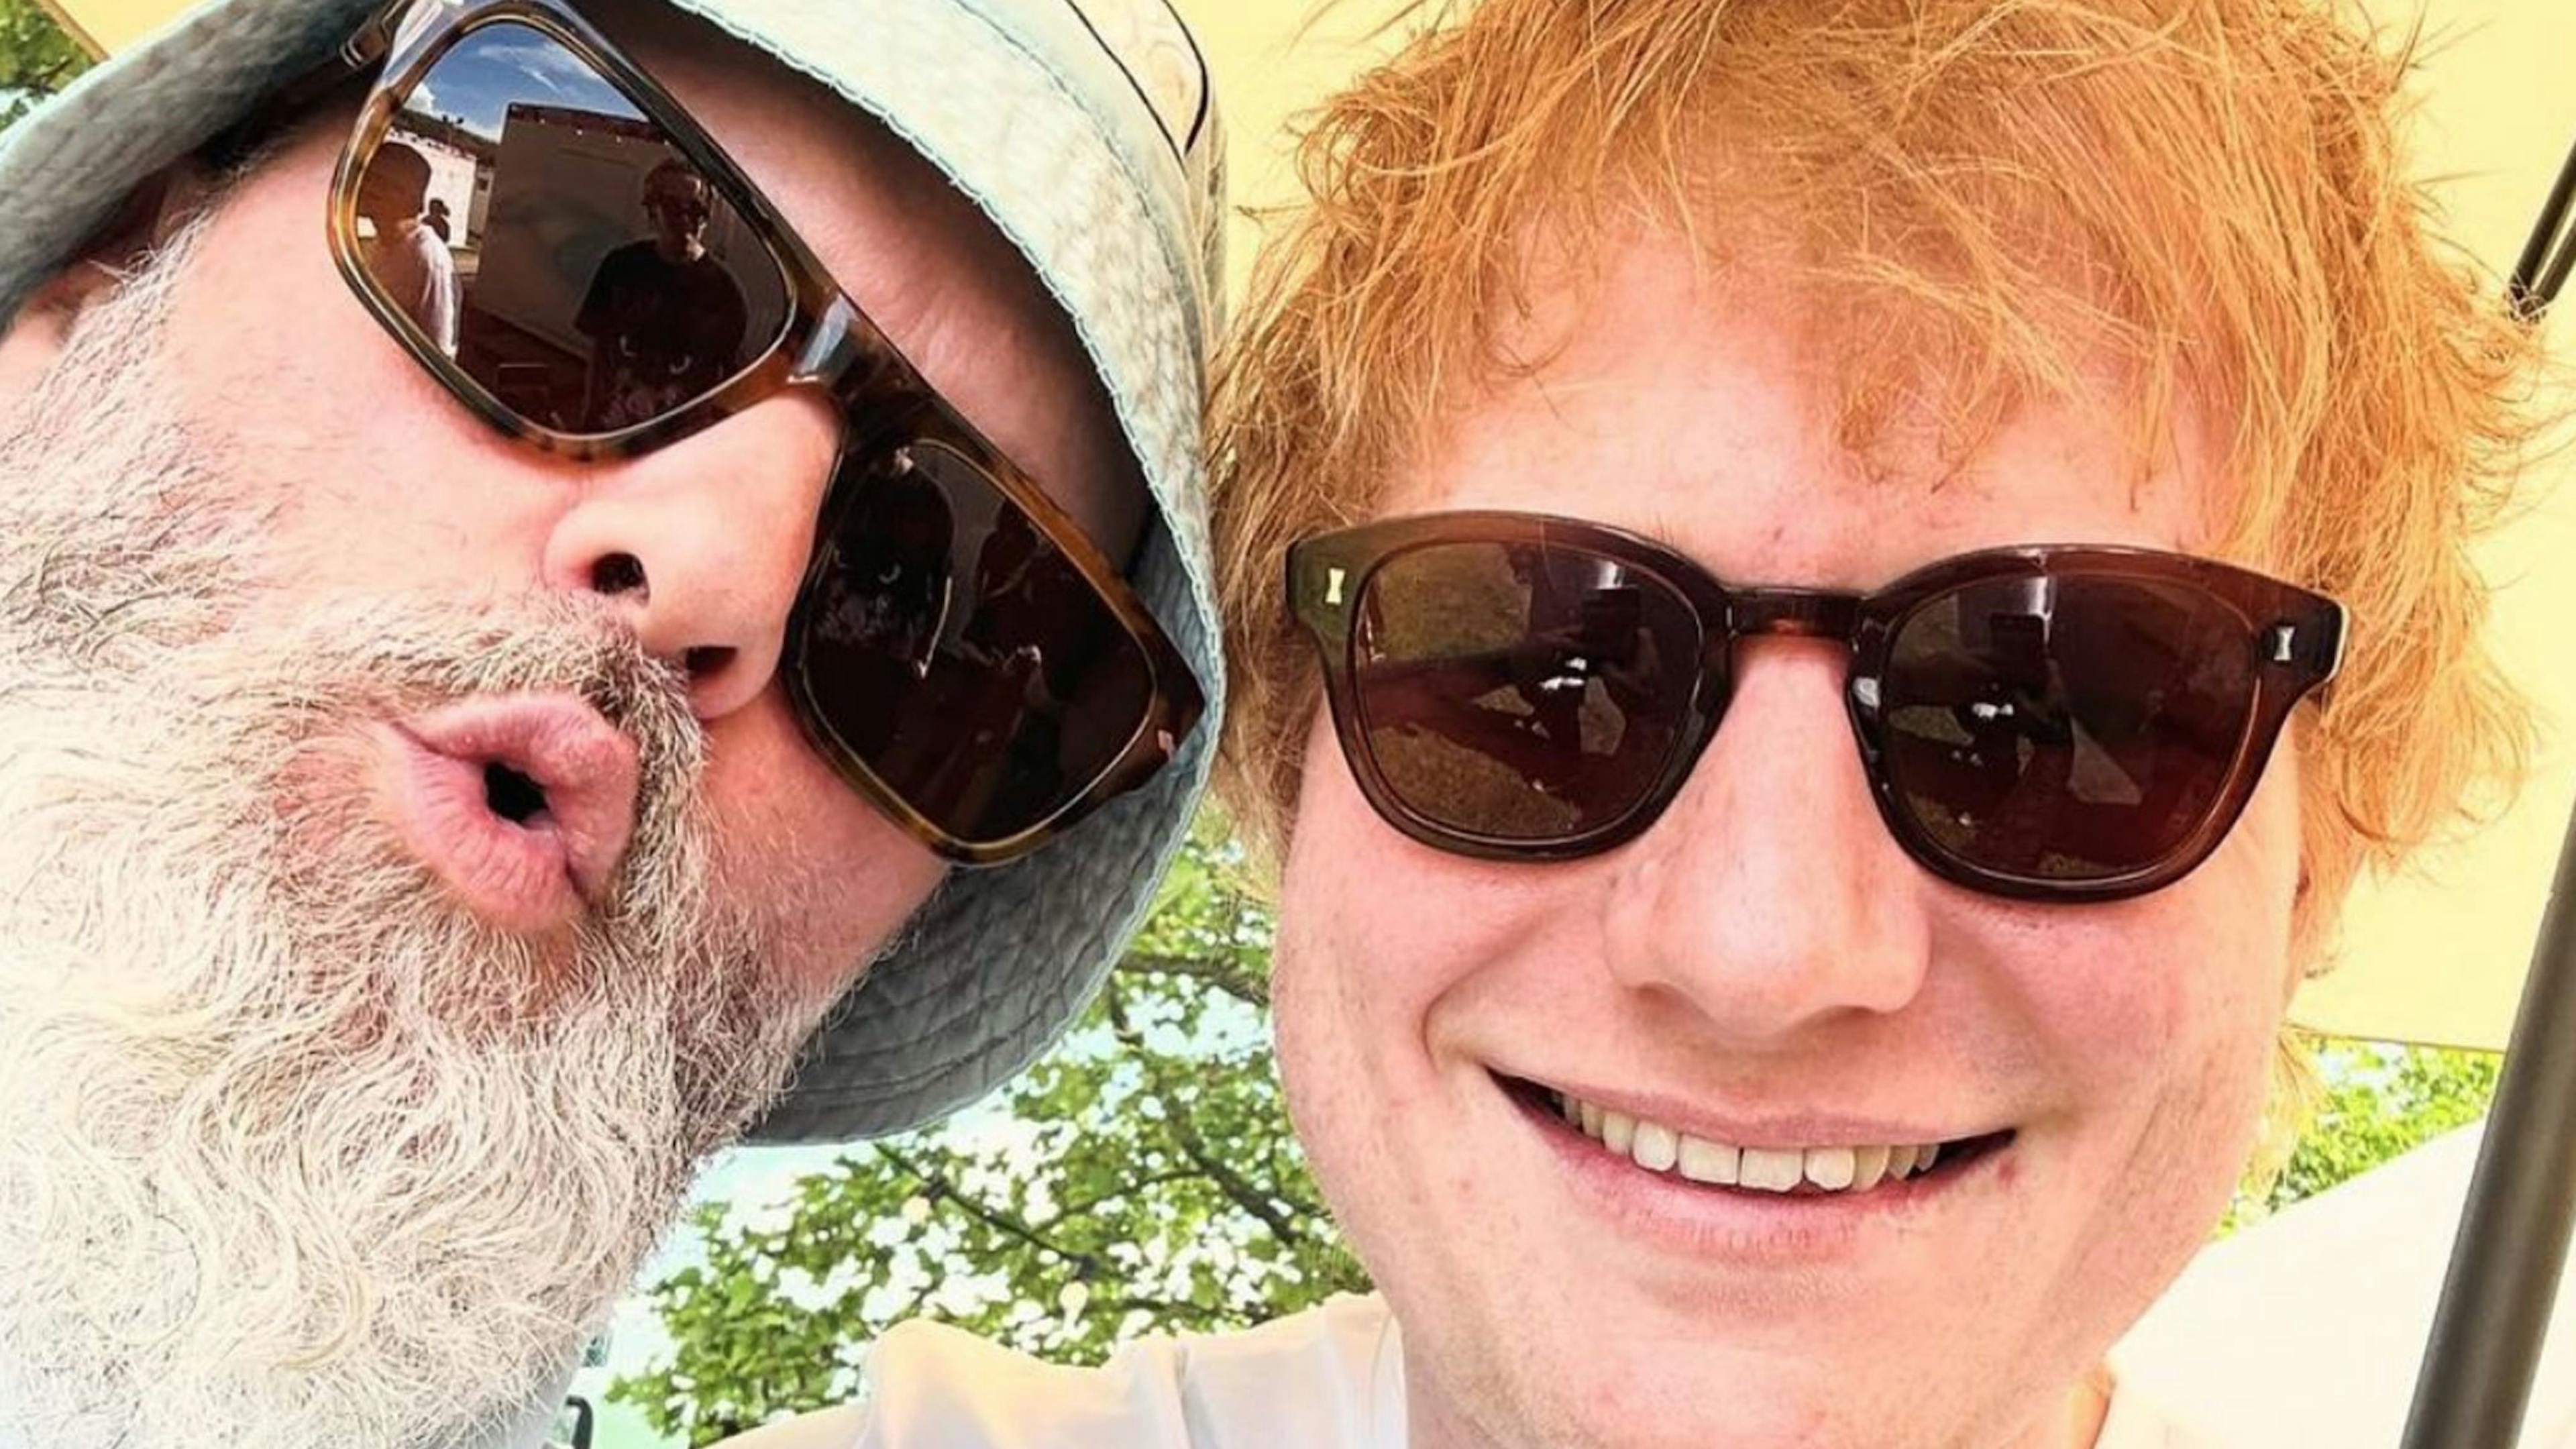 Ed Sheeran sang Behind Blue Eyes with Limp Bizkit at Pinkpop over the weekend